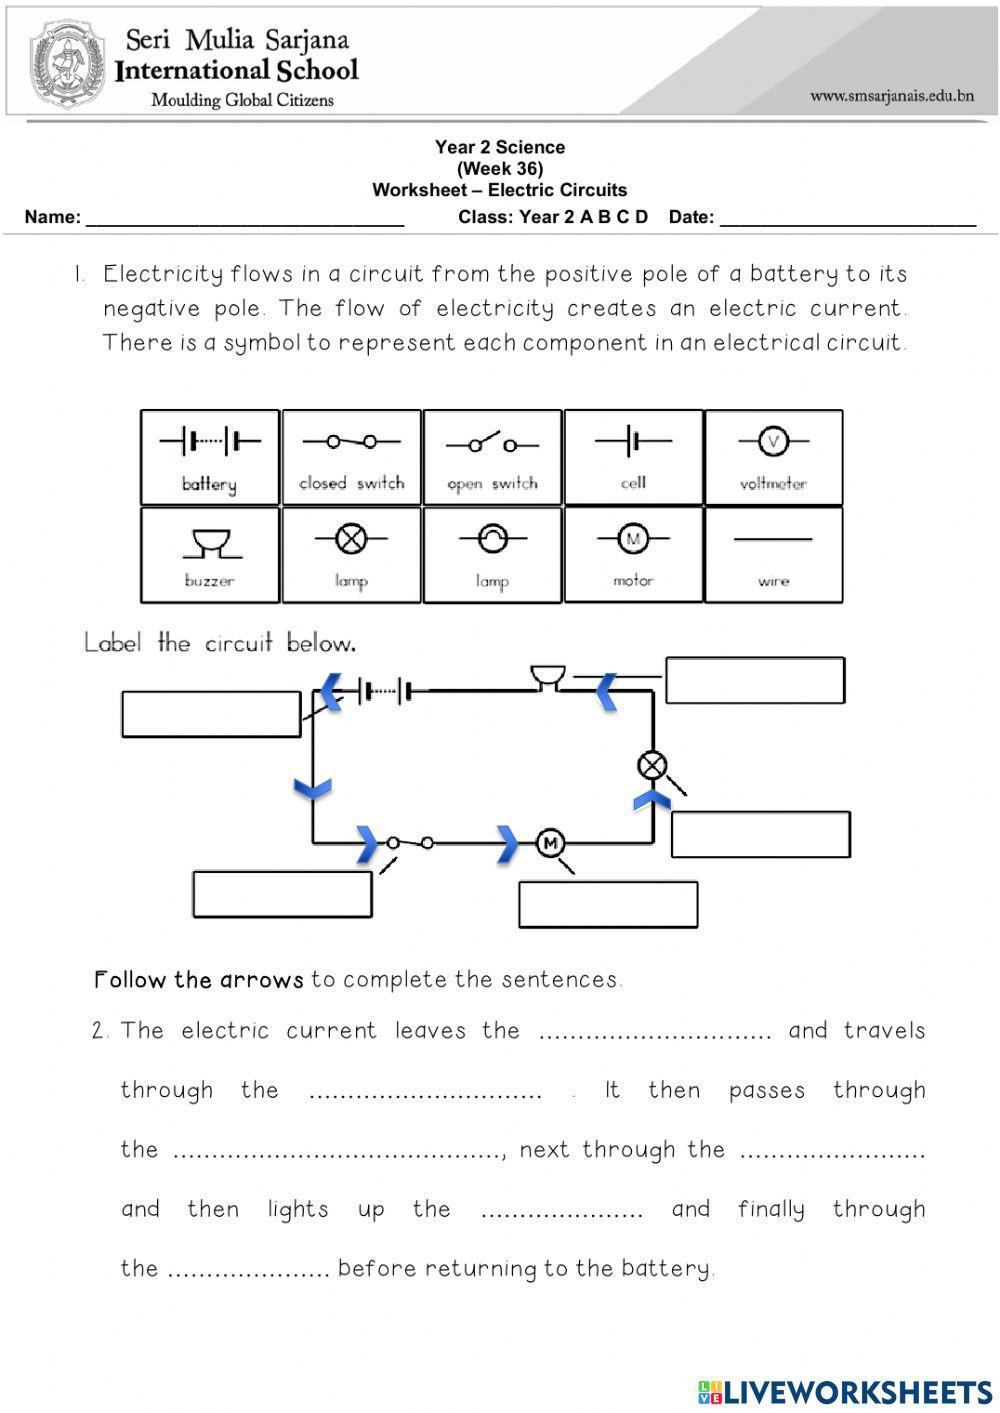 Y2 Science Worksheet - Electric Circuits